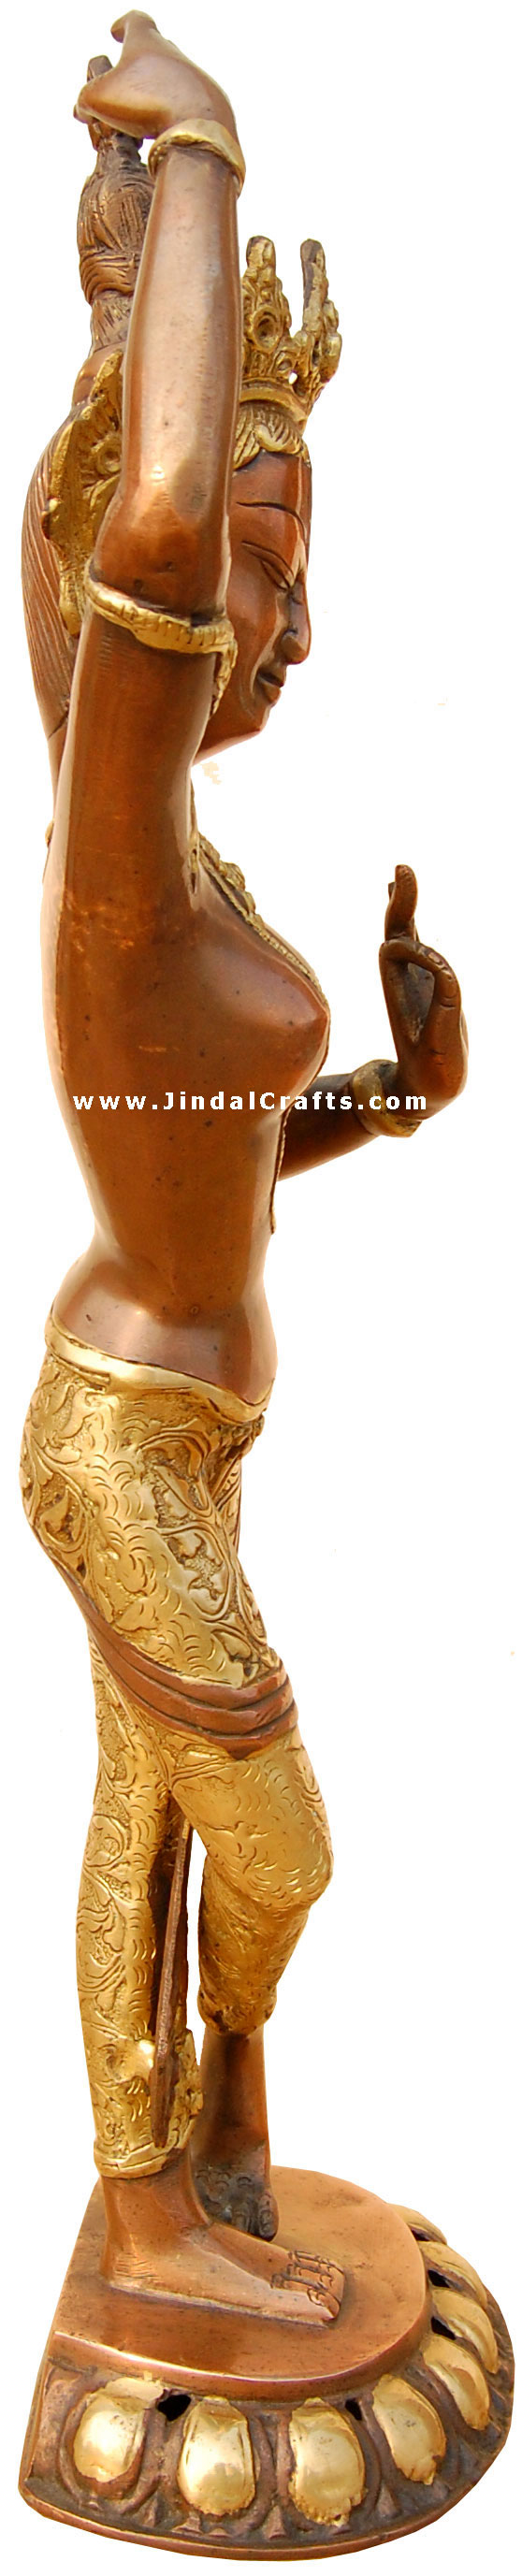 Buddhist Goddess Tara Sculpture Statue Idol Antique Art Handmade Brass Artifacts